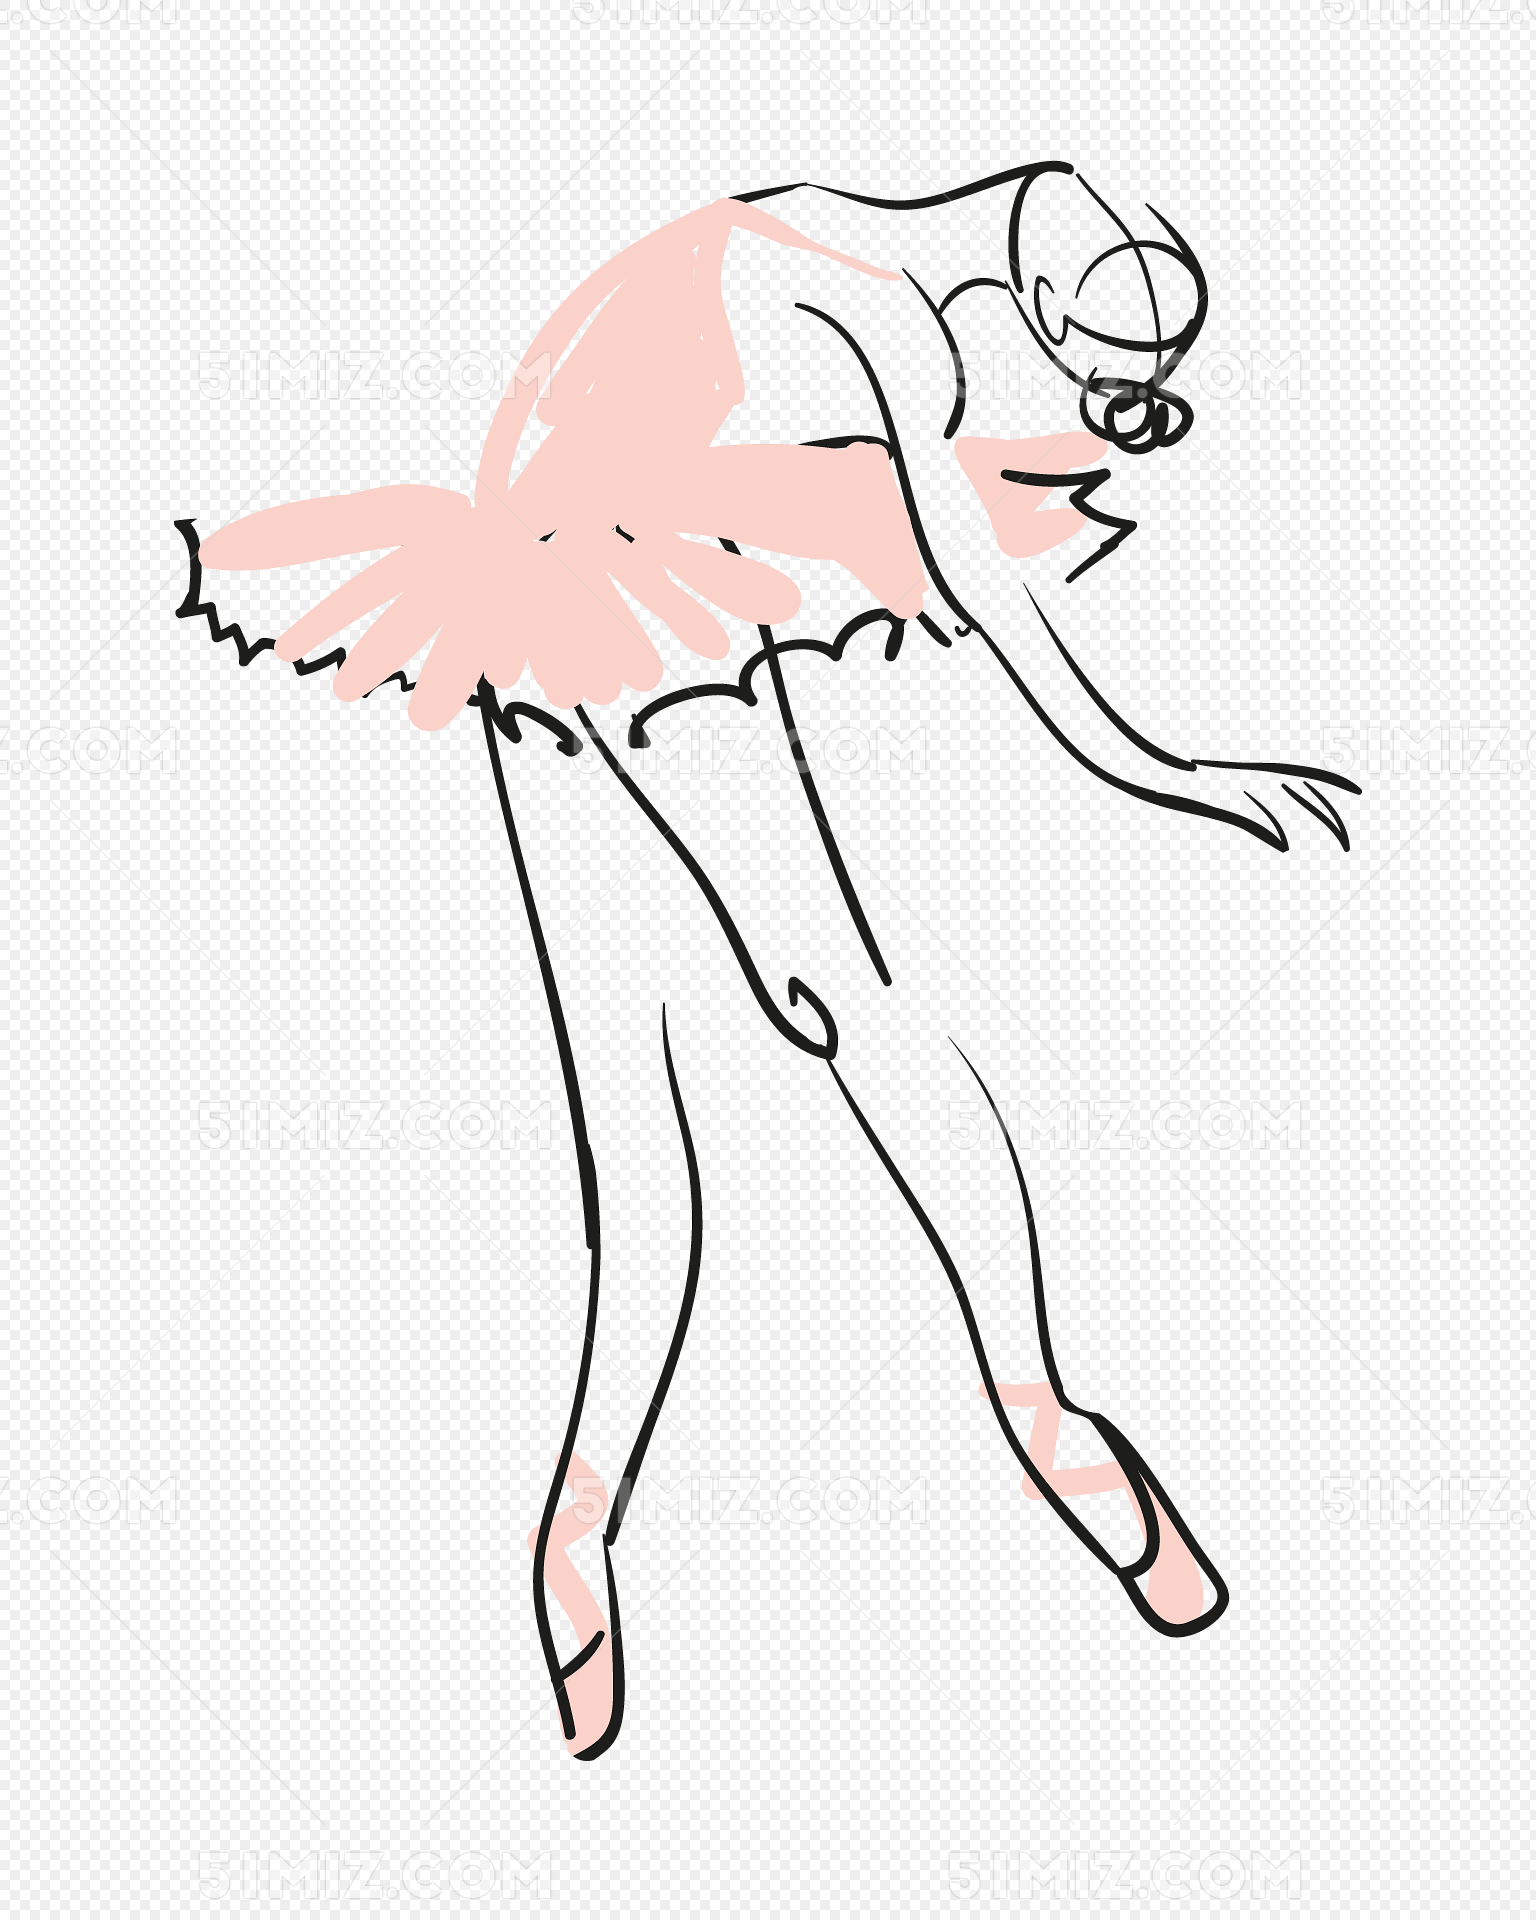 粉色芭蕾舞女郎矢量素材免费下载 芭蕾舞女郎矢量 手绘